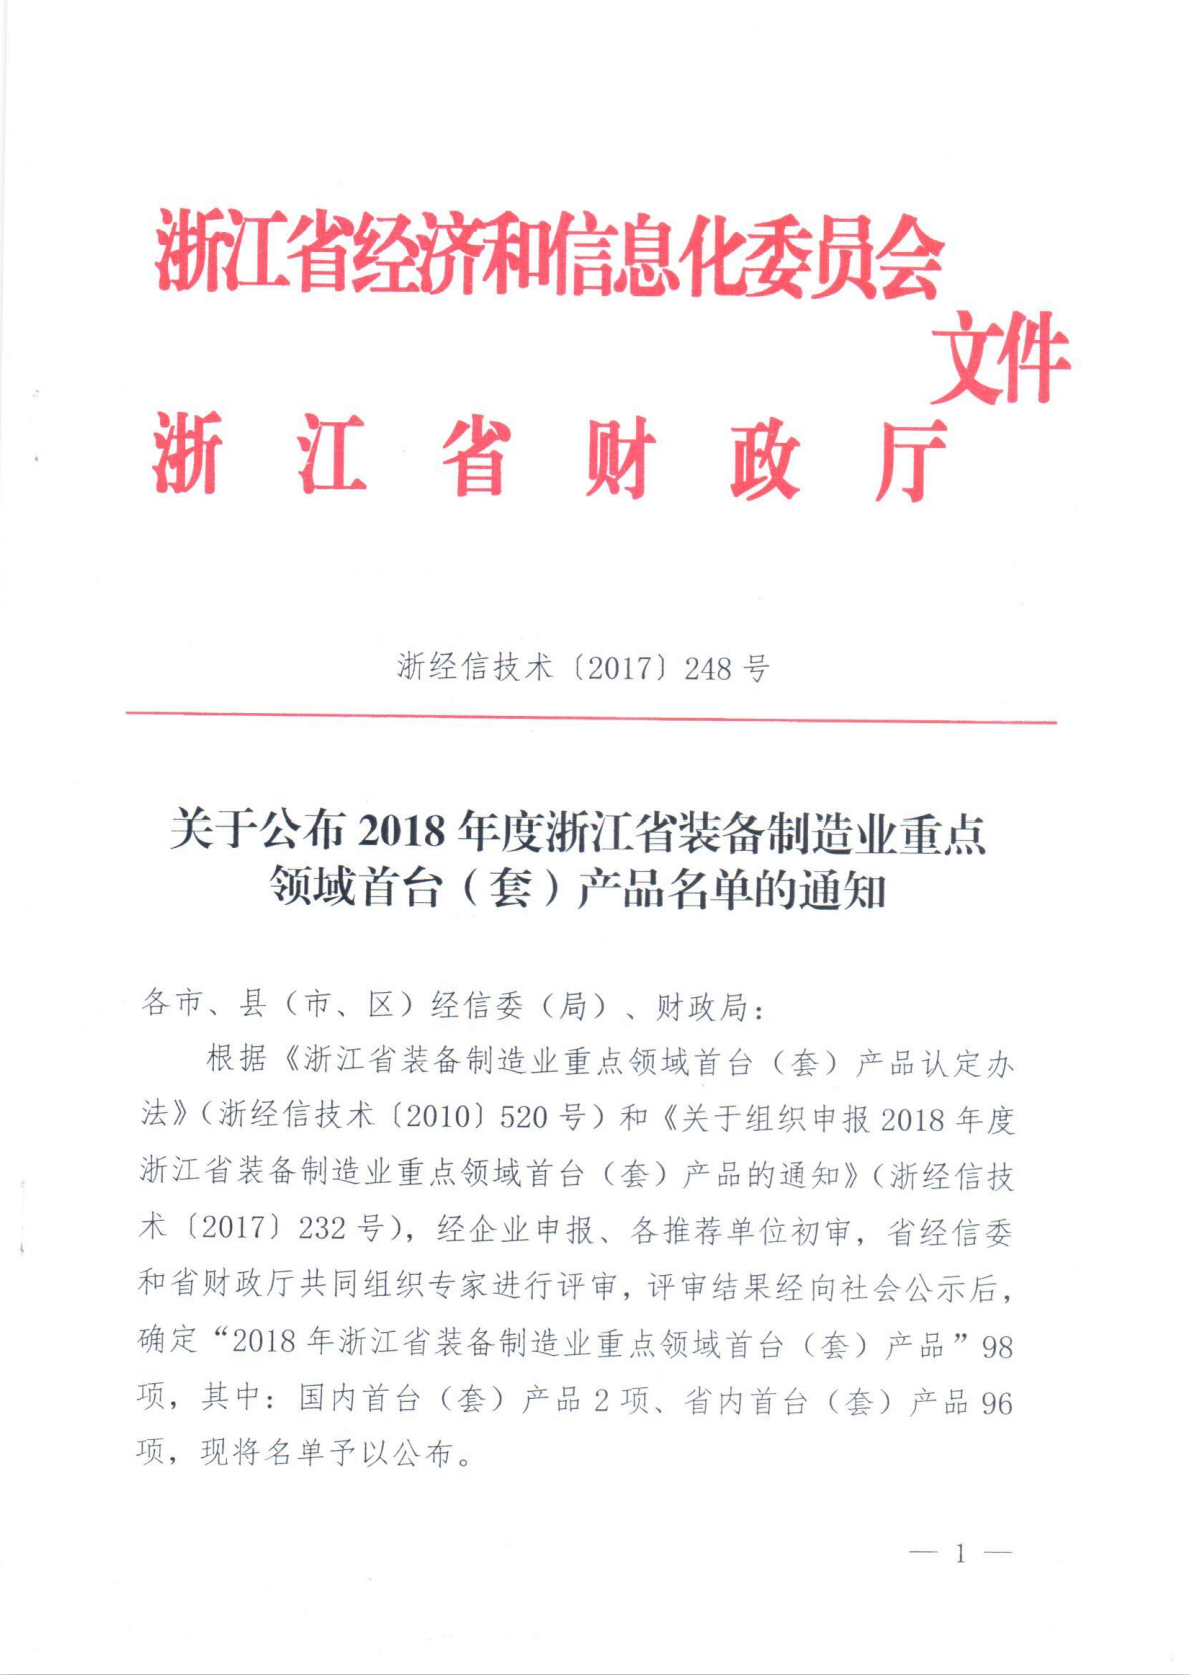 直驅齒輪傳動扶梯主機項目被認定為2018年度浙江省裝備制造業重點領域首臺（套）產品